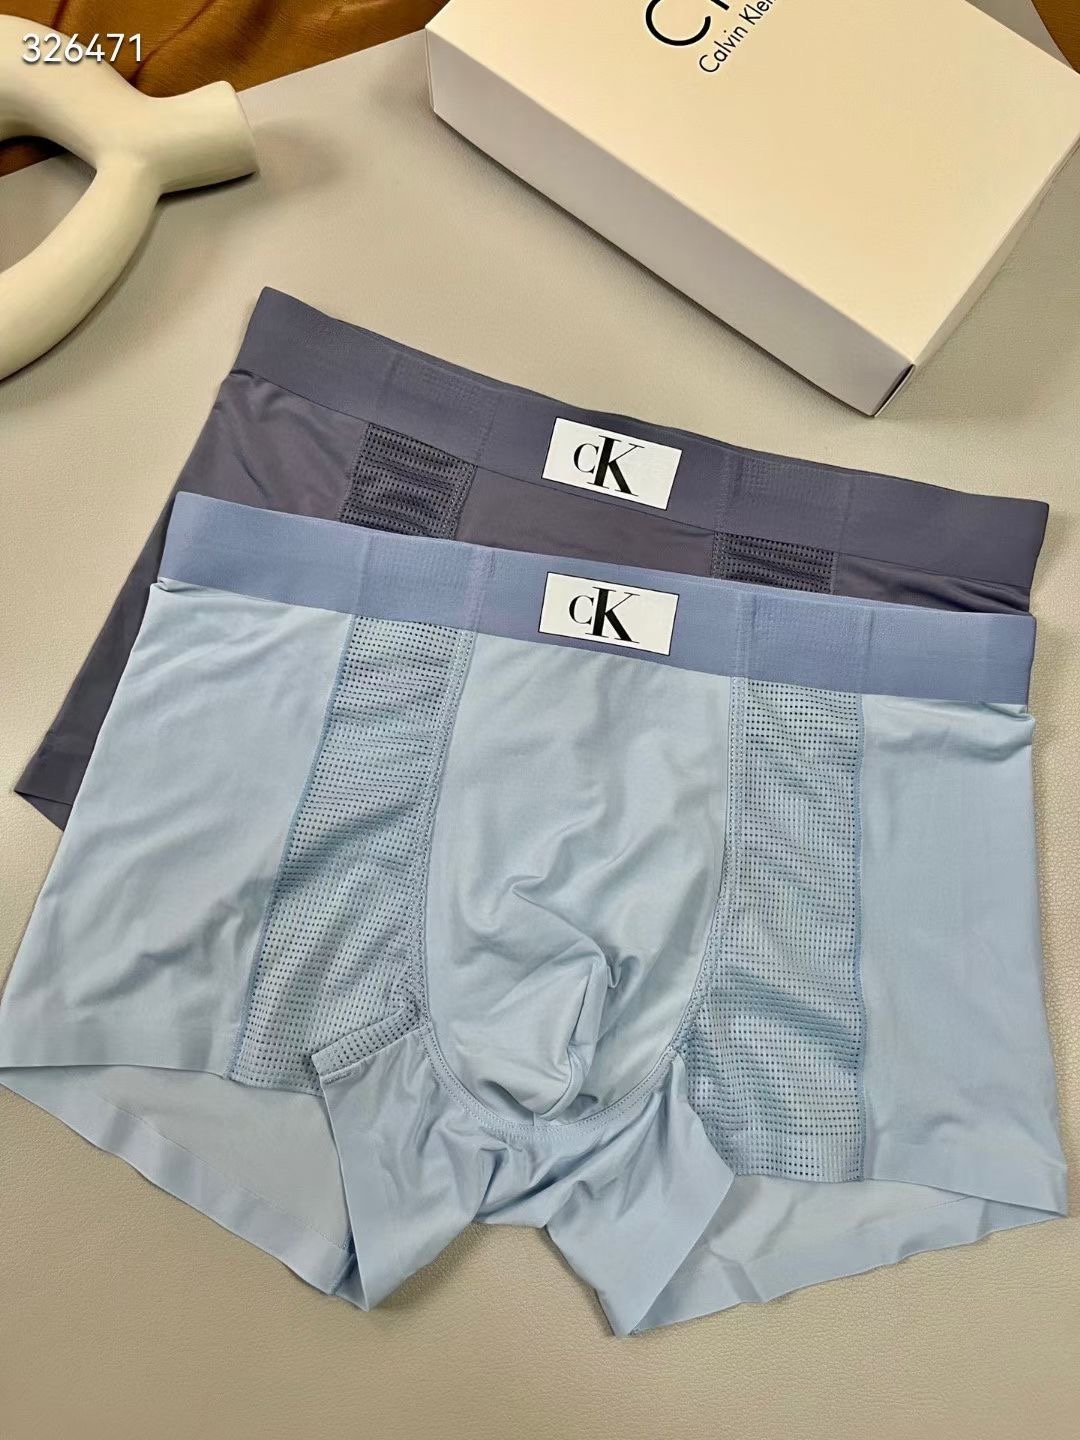 新款CK超薄冰丝网孔空调男士内裤采用优良的材质120支微细冰丝前后网孔拼接一片式裁剪工艺上身冰爽透气舒适